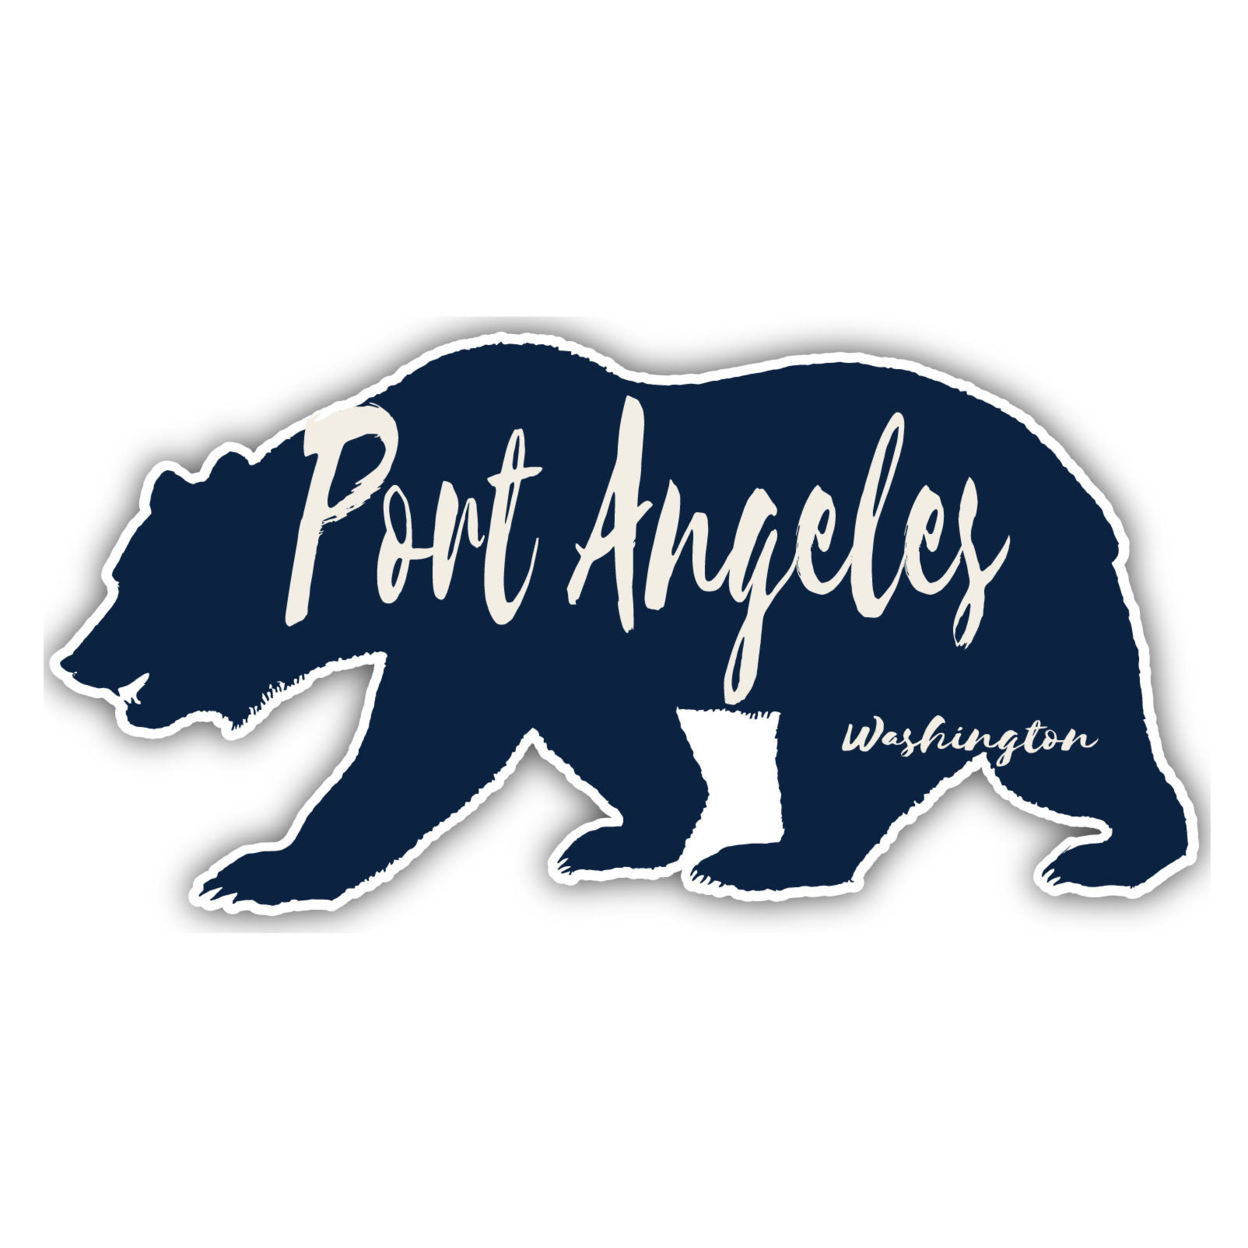 Port Angeles Washington Souvenir Decorative Stickers (Choose Theme And Size) - Single Unit, 4-Inch, Tent